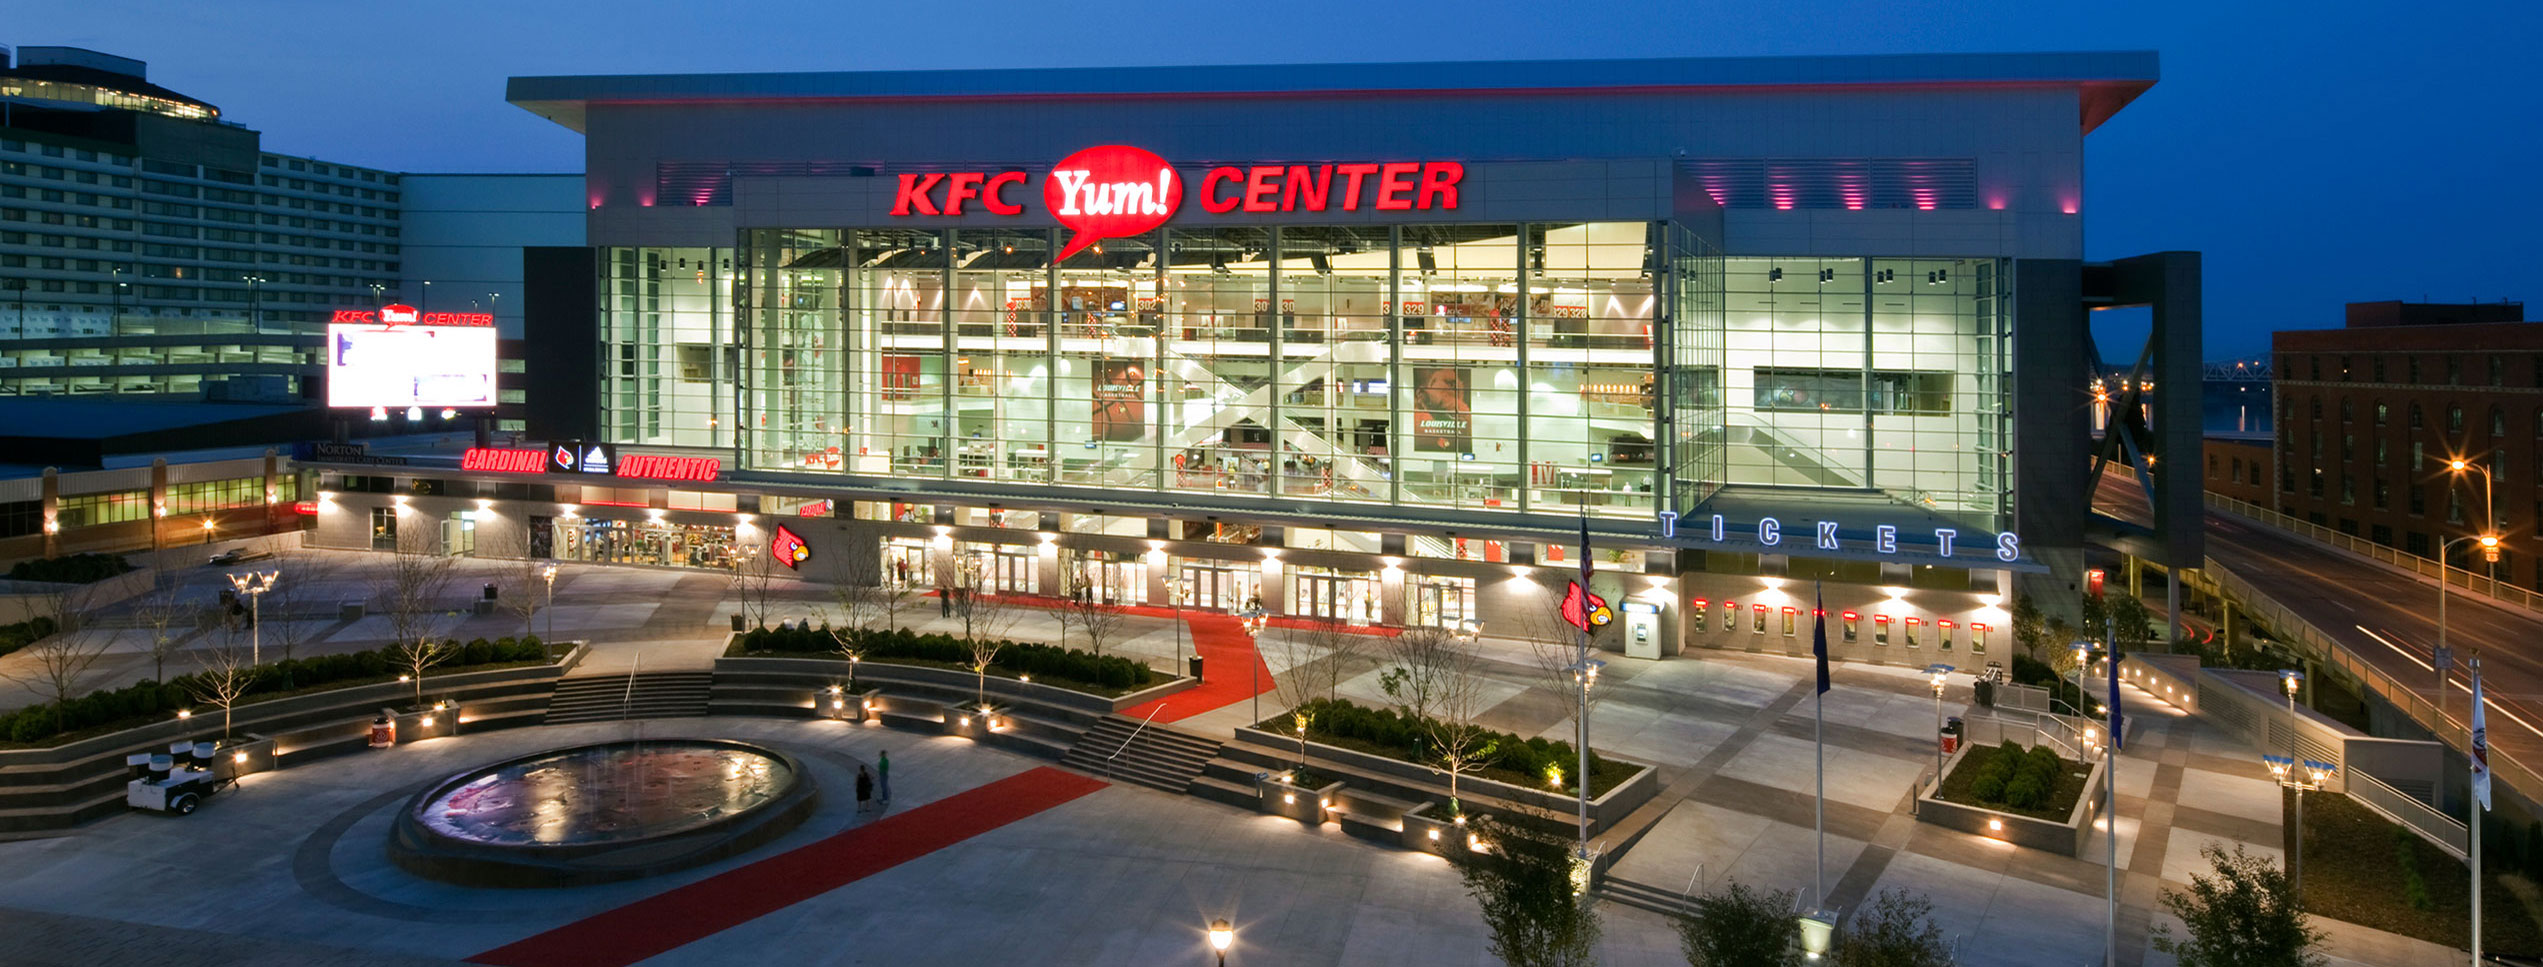 KFC Yum Center